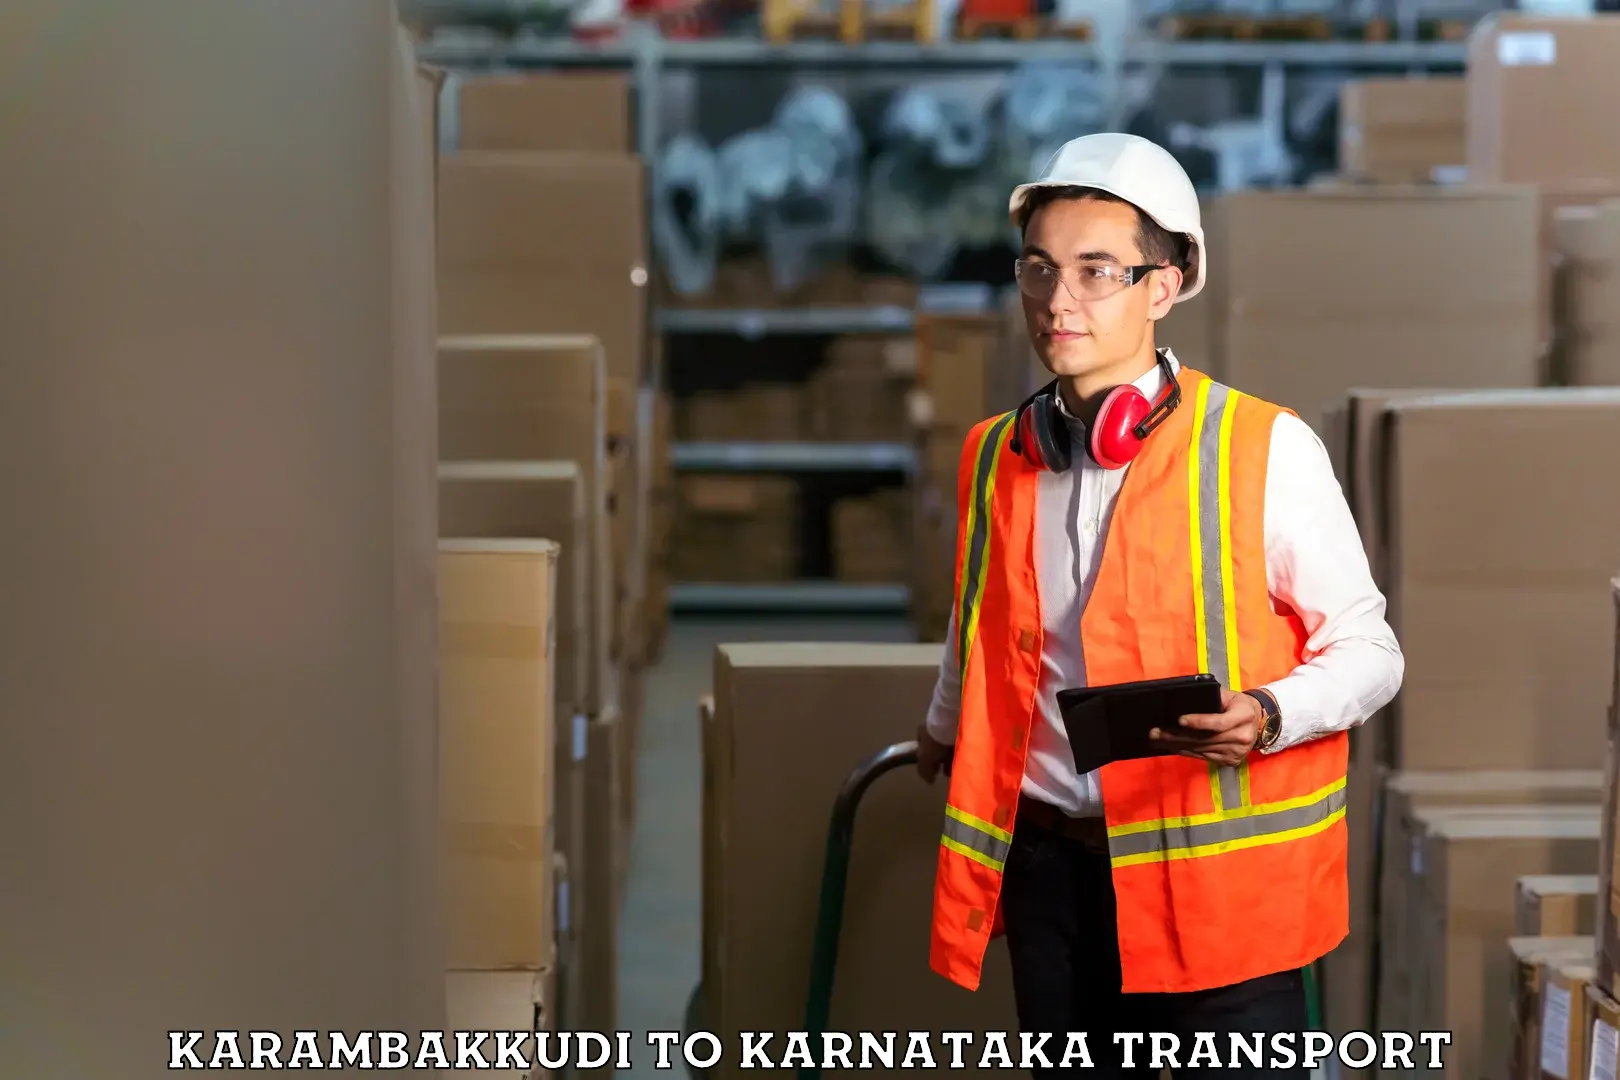 Vehicle parcel service Karambakkudi to Kanjarakatte